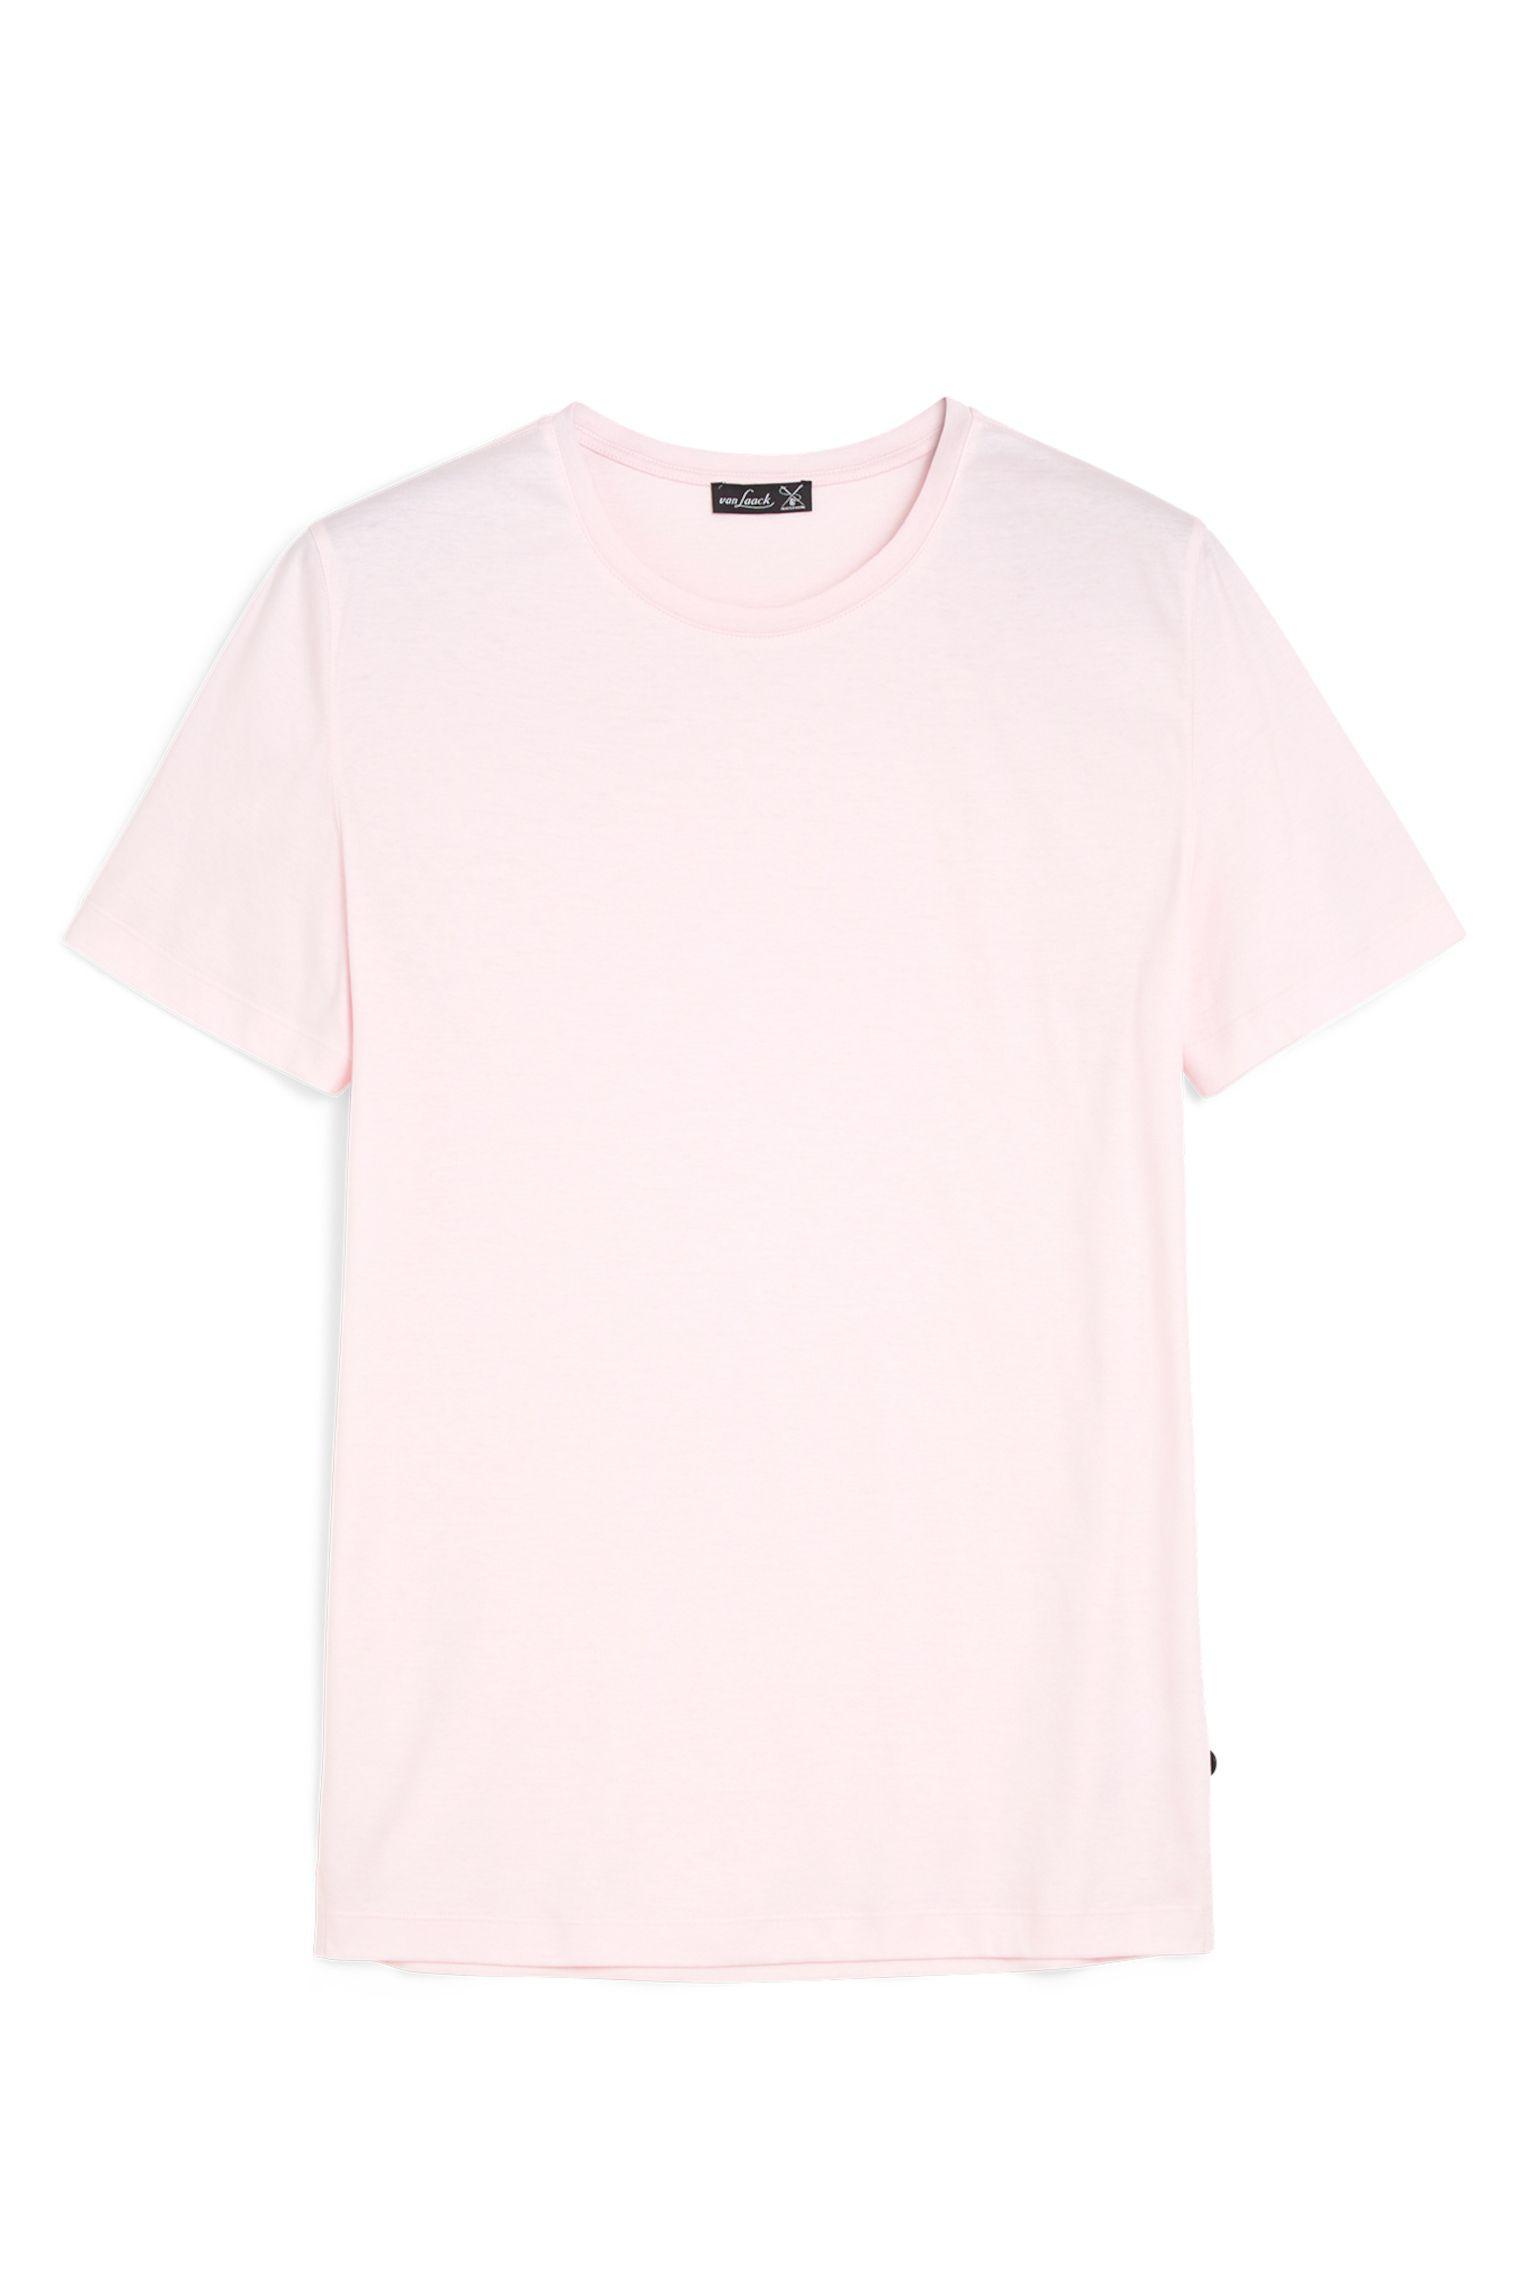 футболка M PARO розовый M-PARO_180031_510 ,photo 1